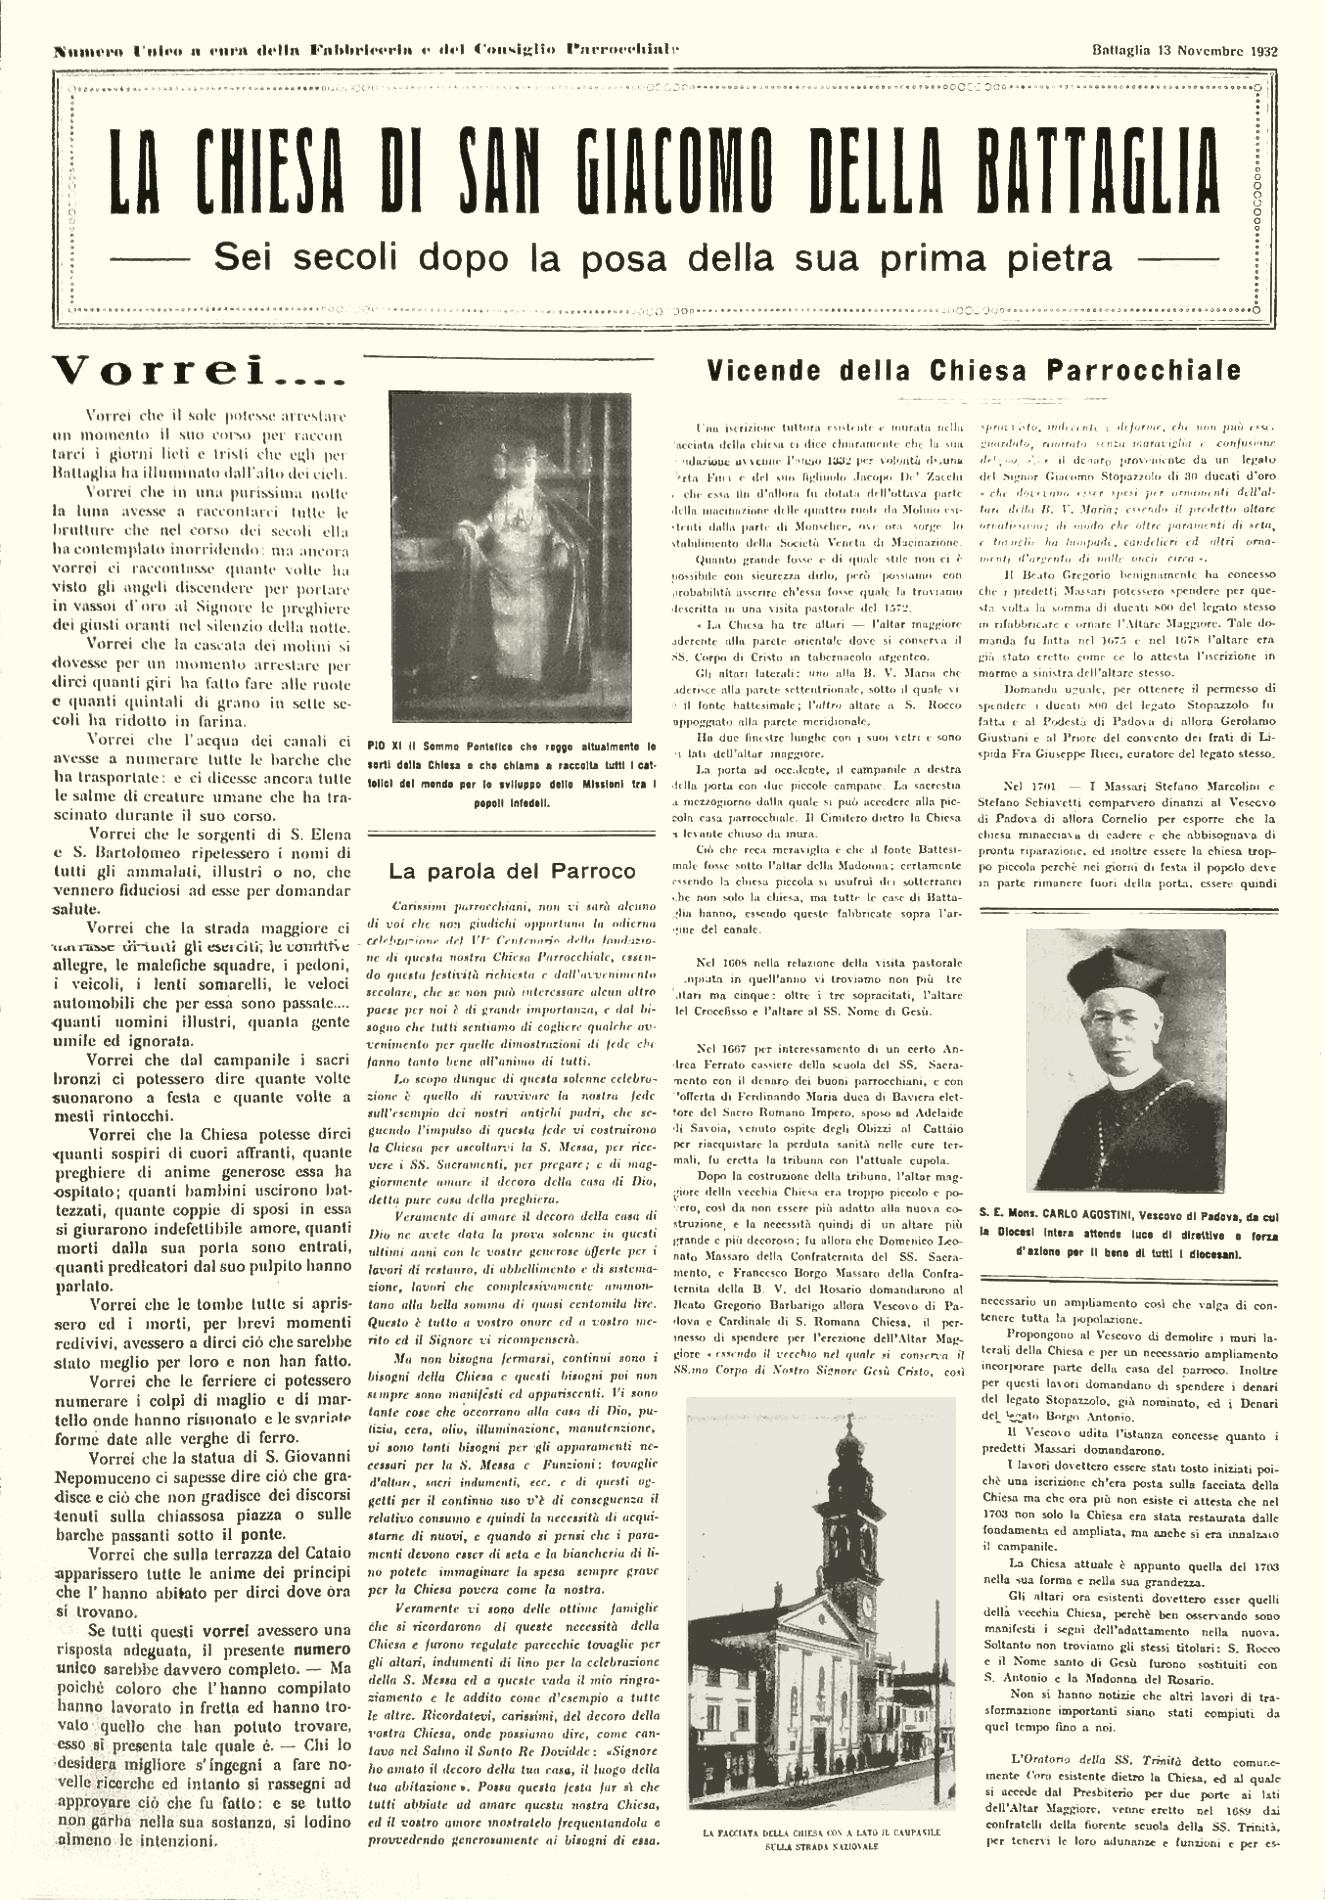 Prima pagina del numero unico intitolato: La Chiesa di San Giacomo della Battaglia, dato alle stampe nel 1932.